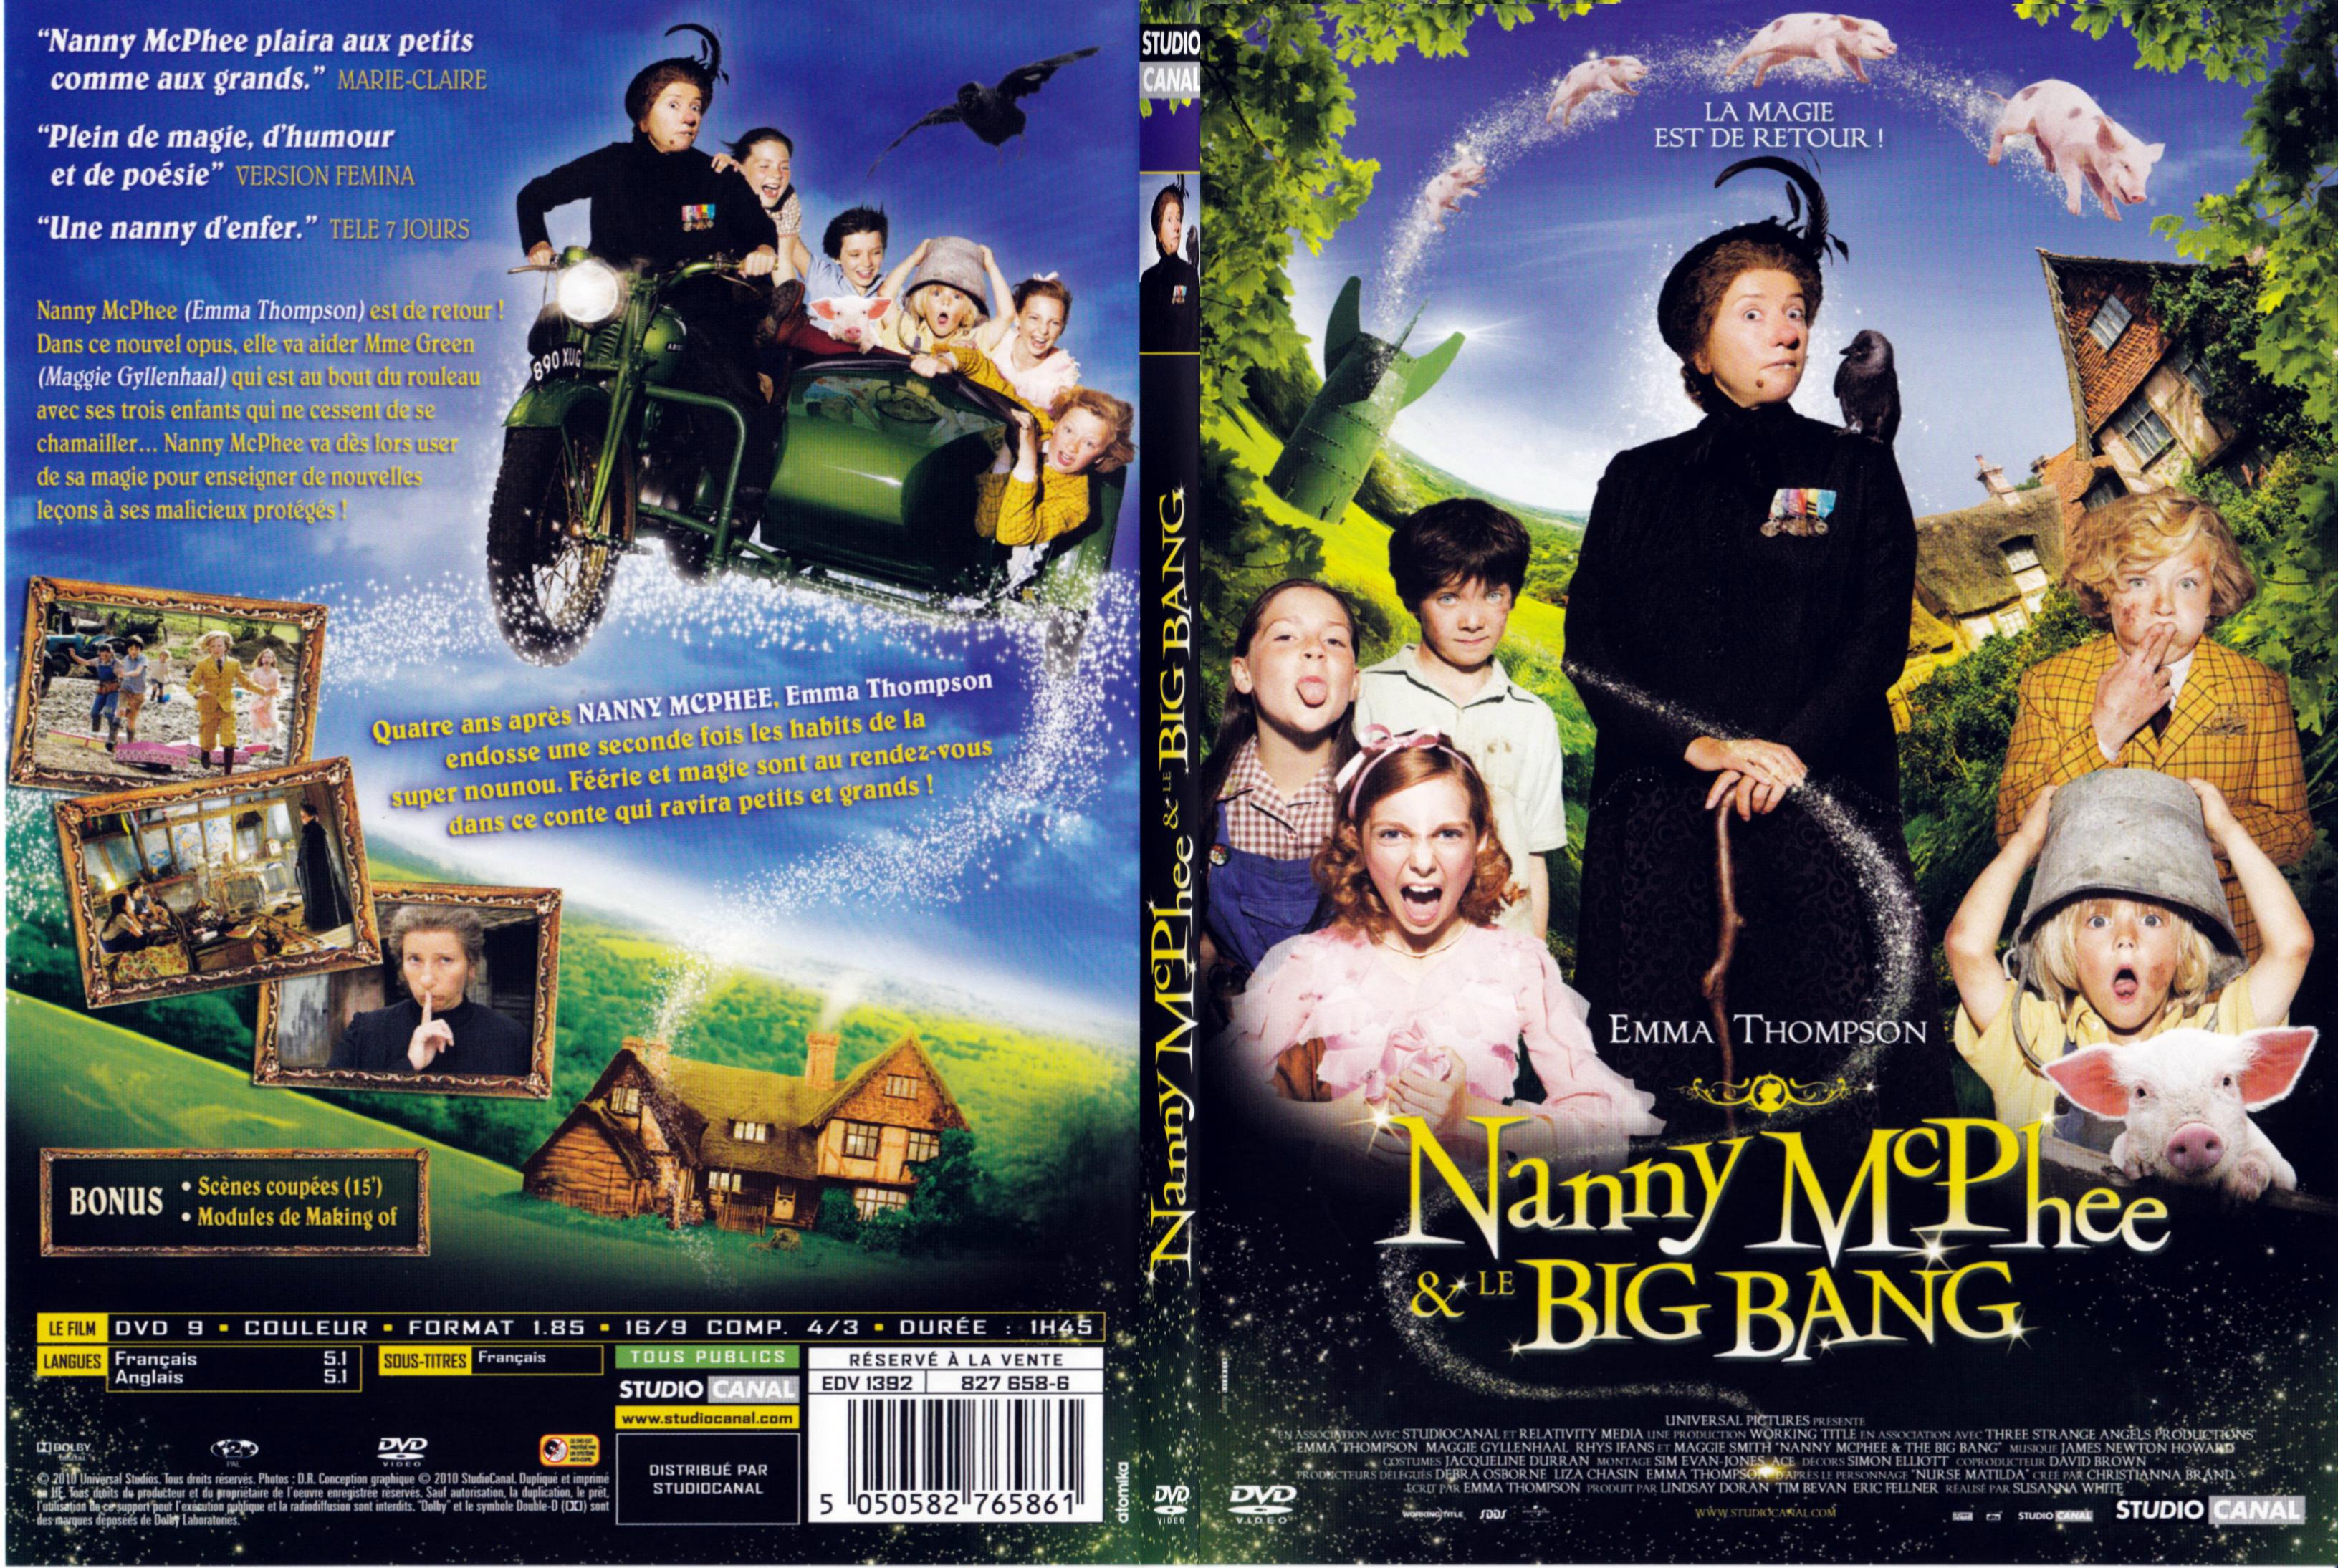 Jaquette DVD Nanny McPhee et le big bang - SLIM